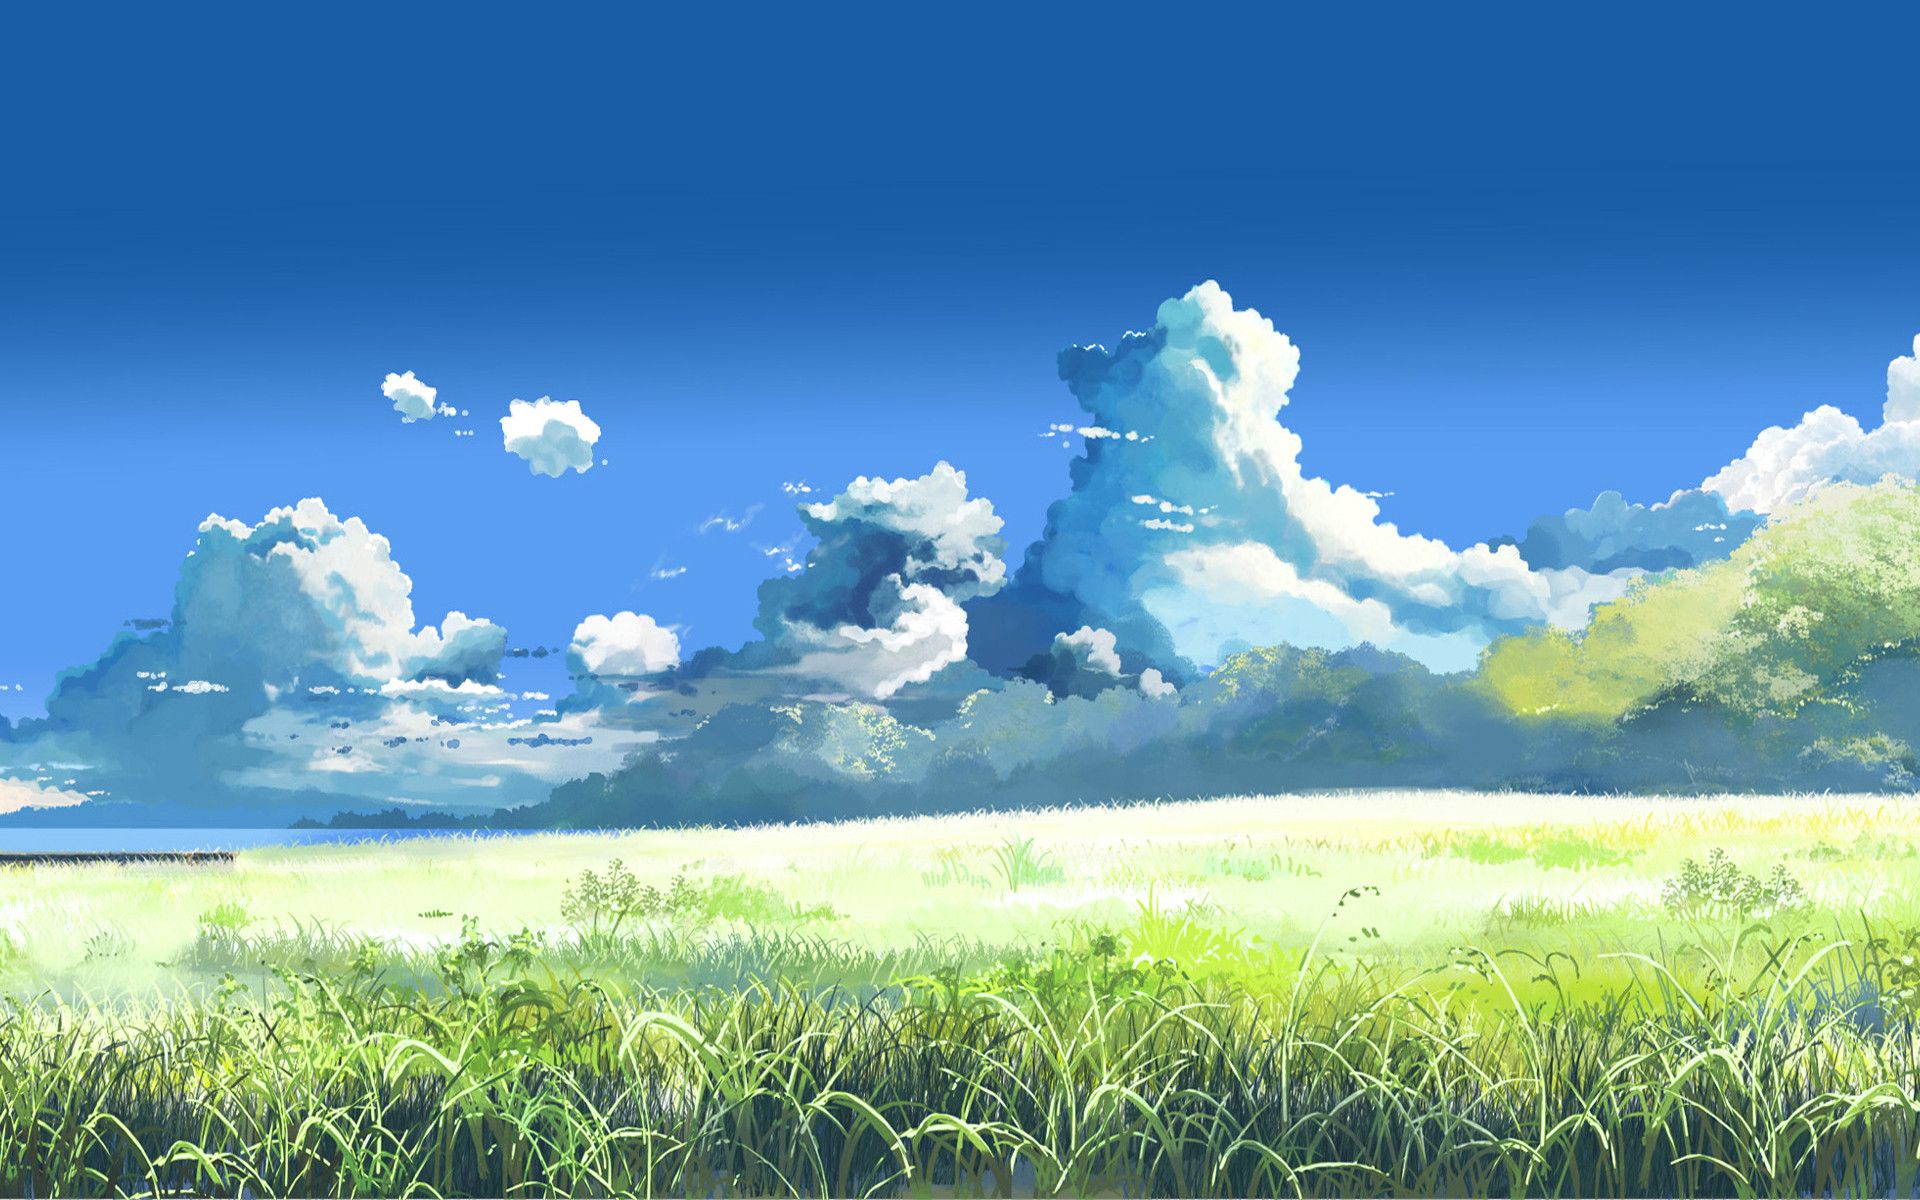 Bộ sưu tập hình nền anime thiên nhiên đầy màu sắc sẽ giúp cho màn hình điện thoại của bạn trở nên mộc mạc và ấn tượng hơn.